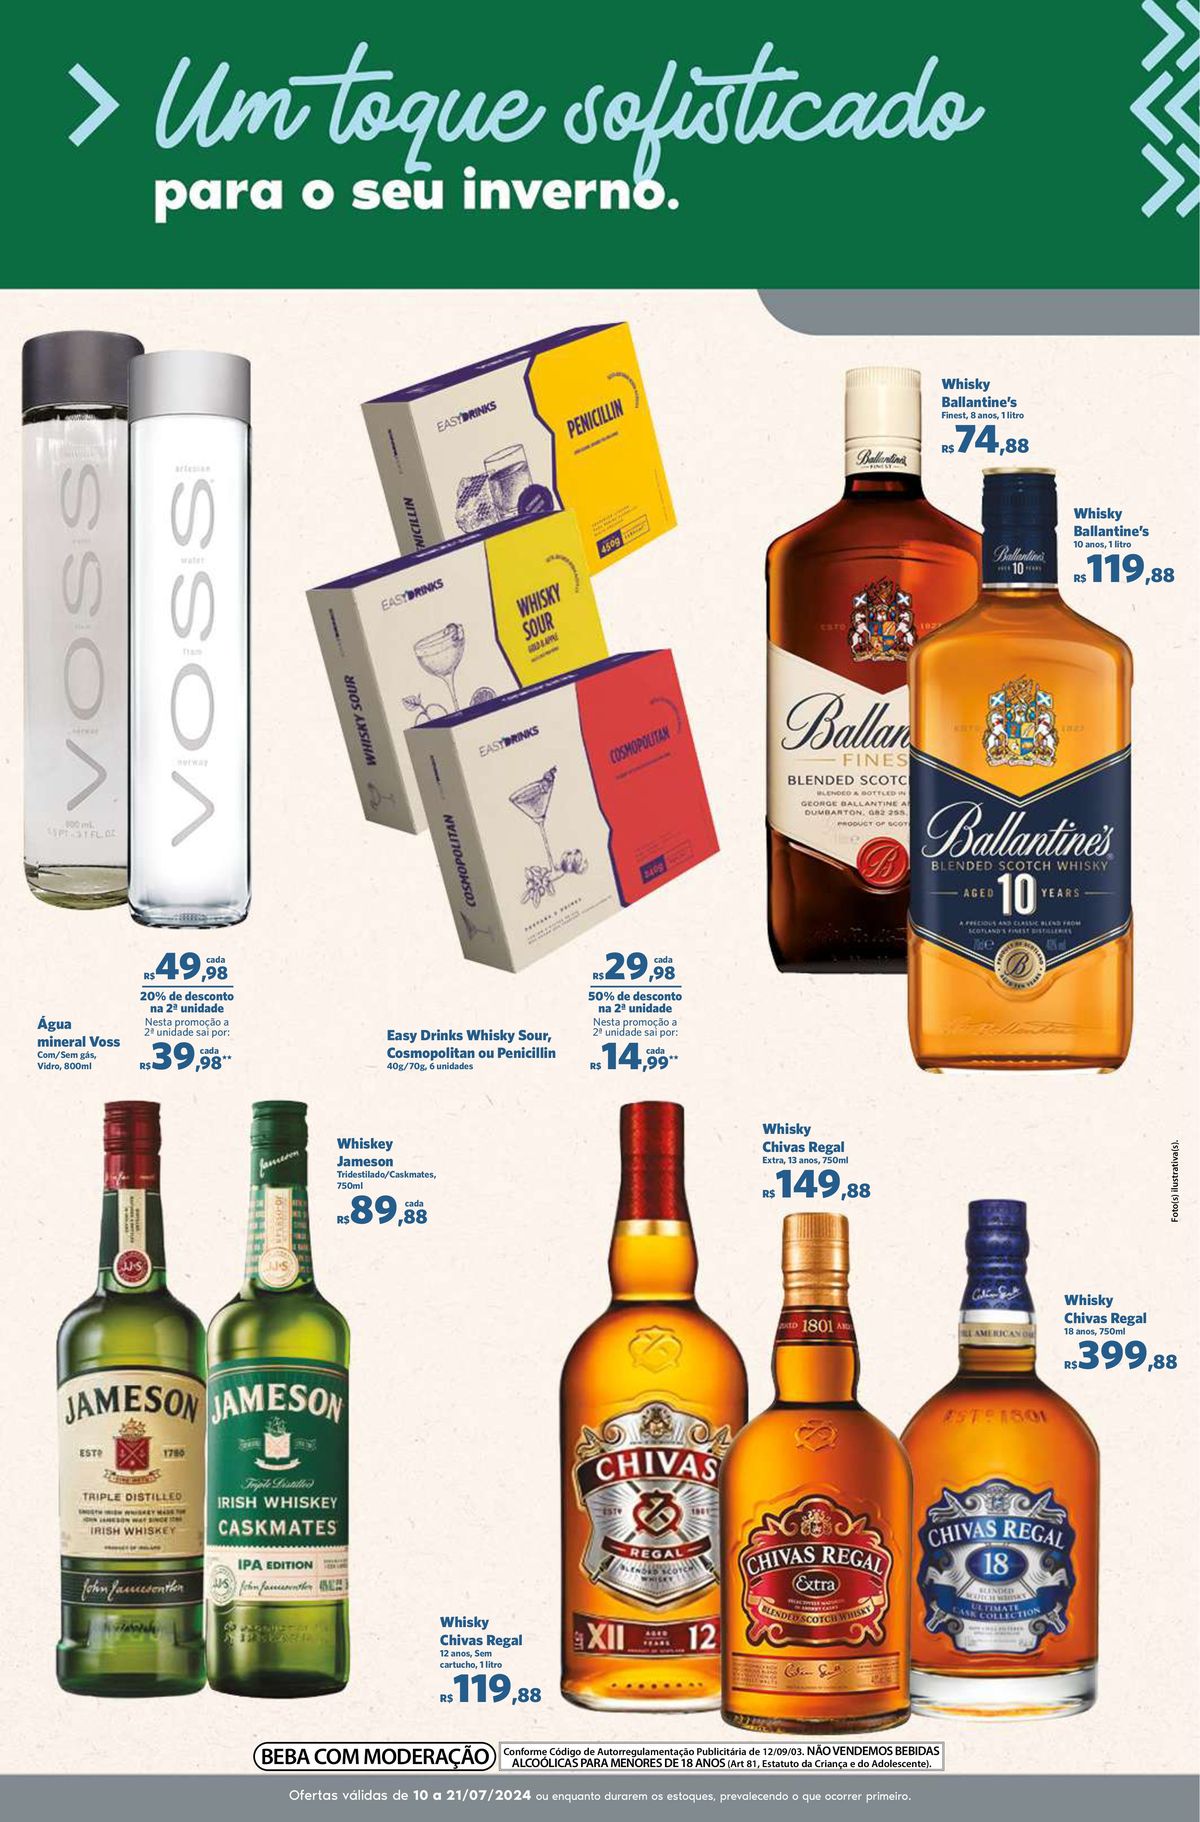 Promoção de Whisky Ballantine's e Chivas Regal